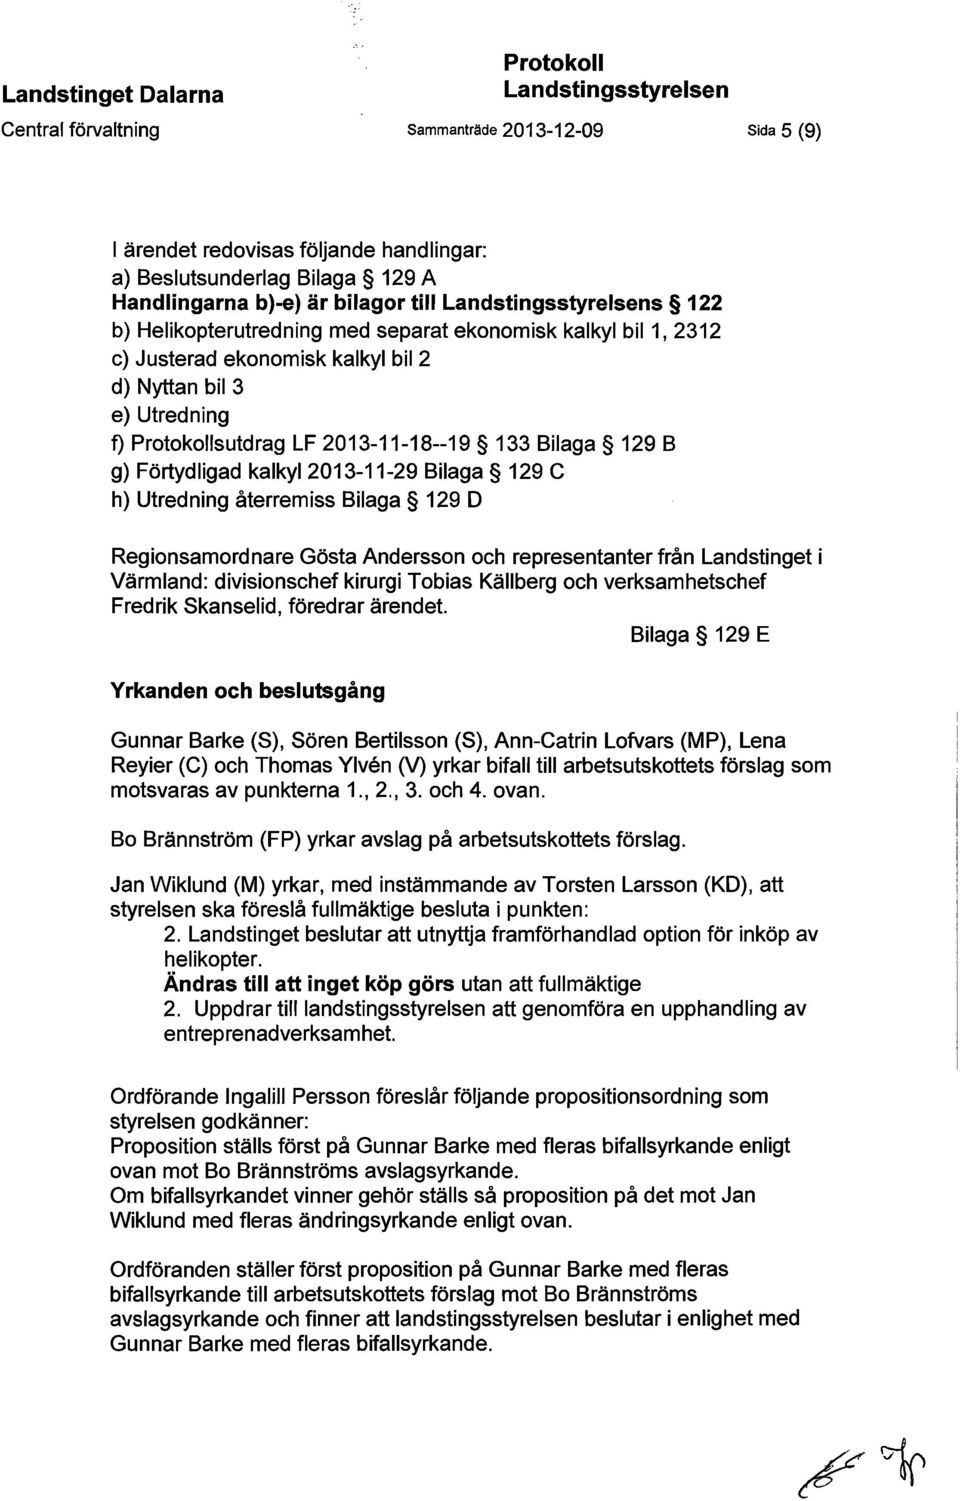 2013-11-18--19 133 Bilaga 129 B g) Förtydligad kalkyl 2013-11-29 Bilaga 129 C h) Utredning återremiss Bilaga 129 D Regionsamordnare Gösta Andersson och representanter från Landstinget i Värmland: